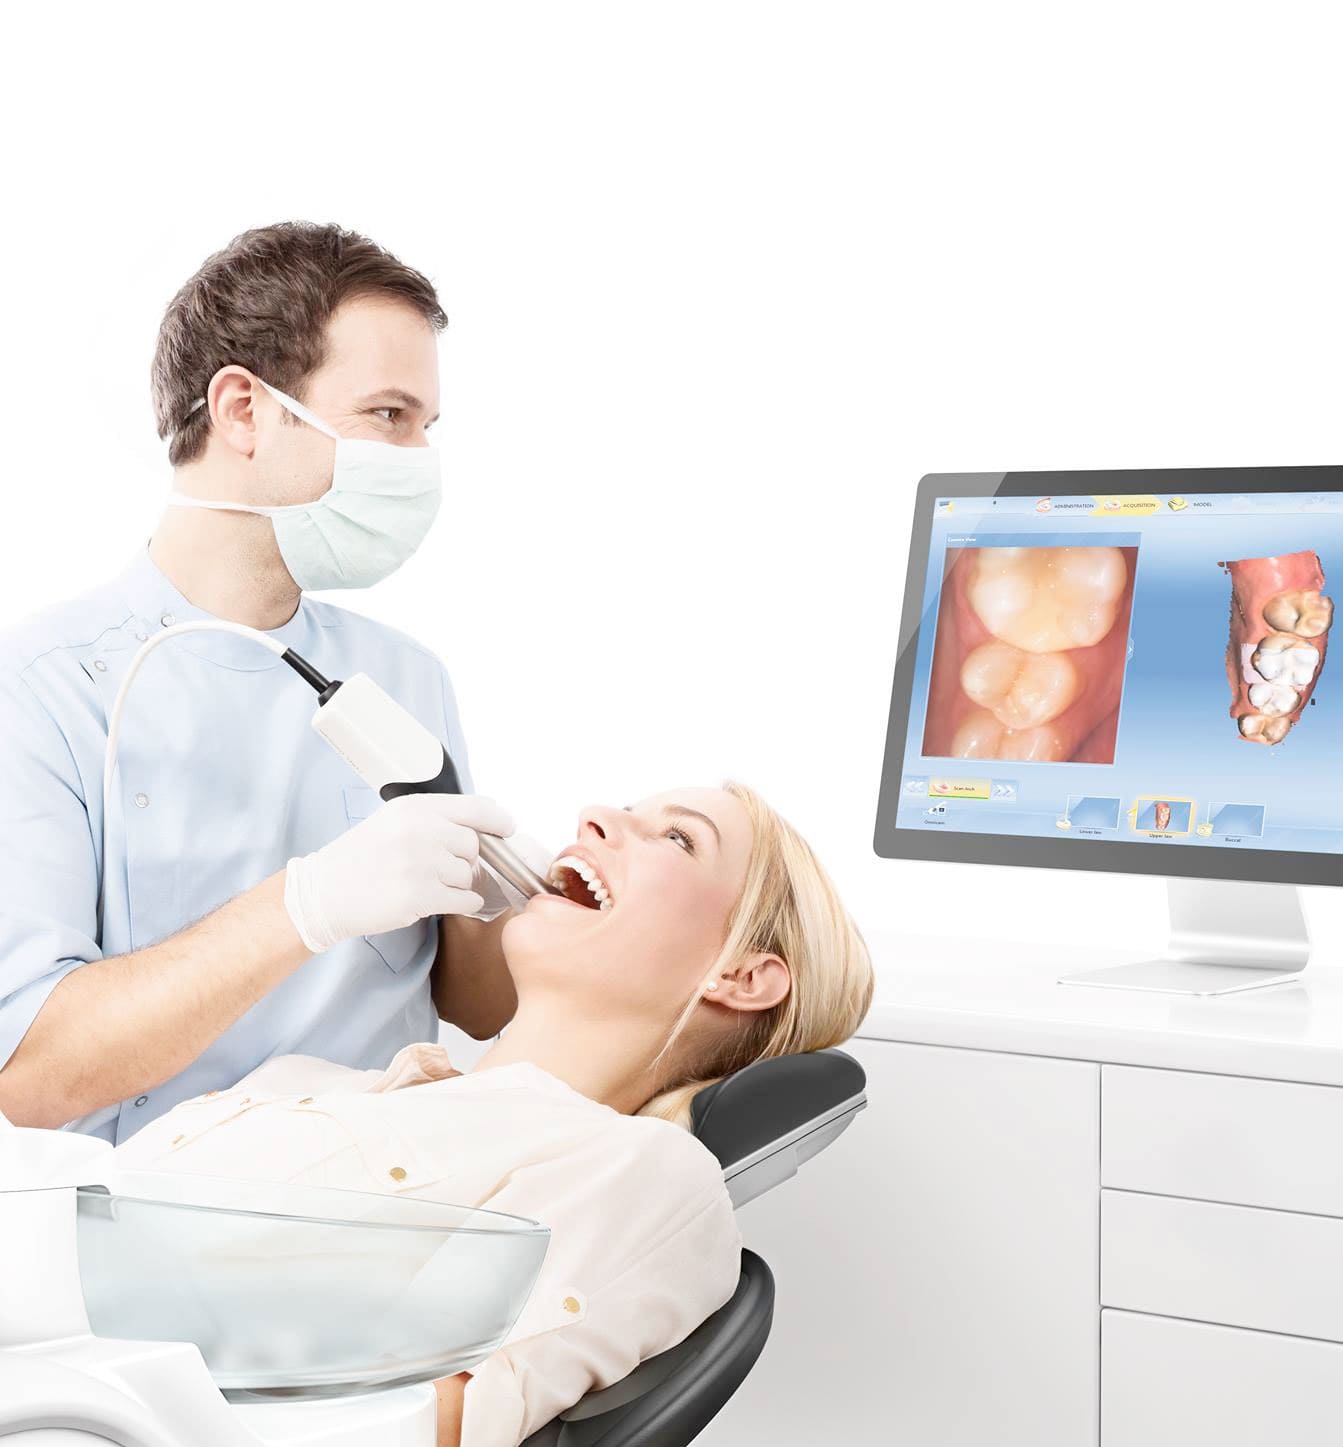 Ultrason ile dental tanısal görüntüleme ağrısızdır, ekonomiktir, non-invazivdir ve bilinen hiçbir yan etkisi yoktur.